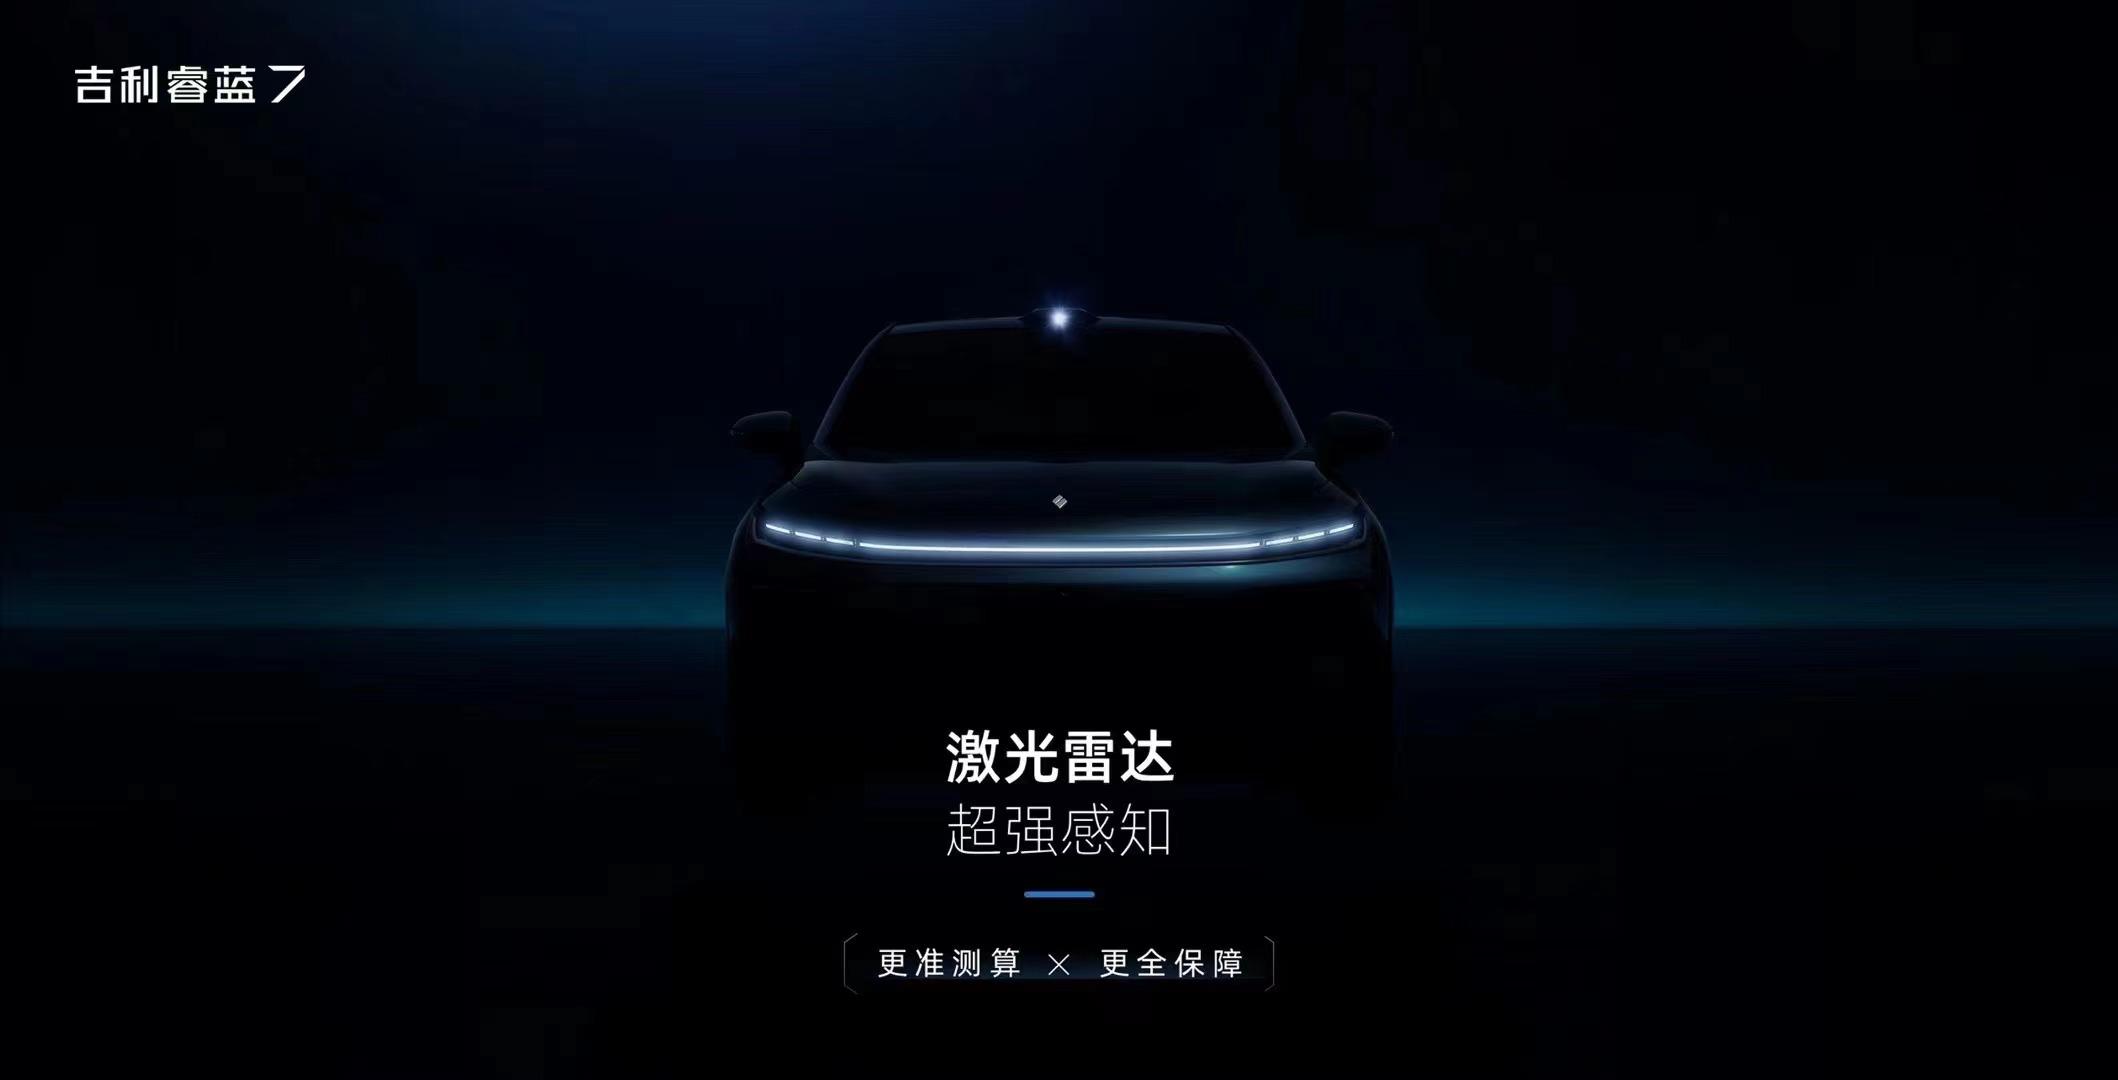 睿蓝7将亮相上海国际车展，配备激光雷达、支持换电